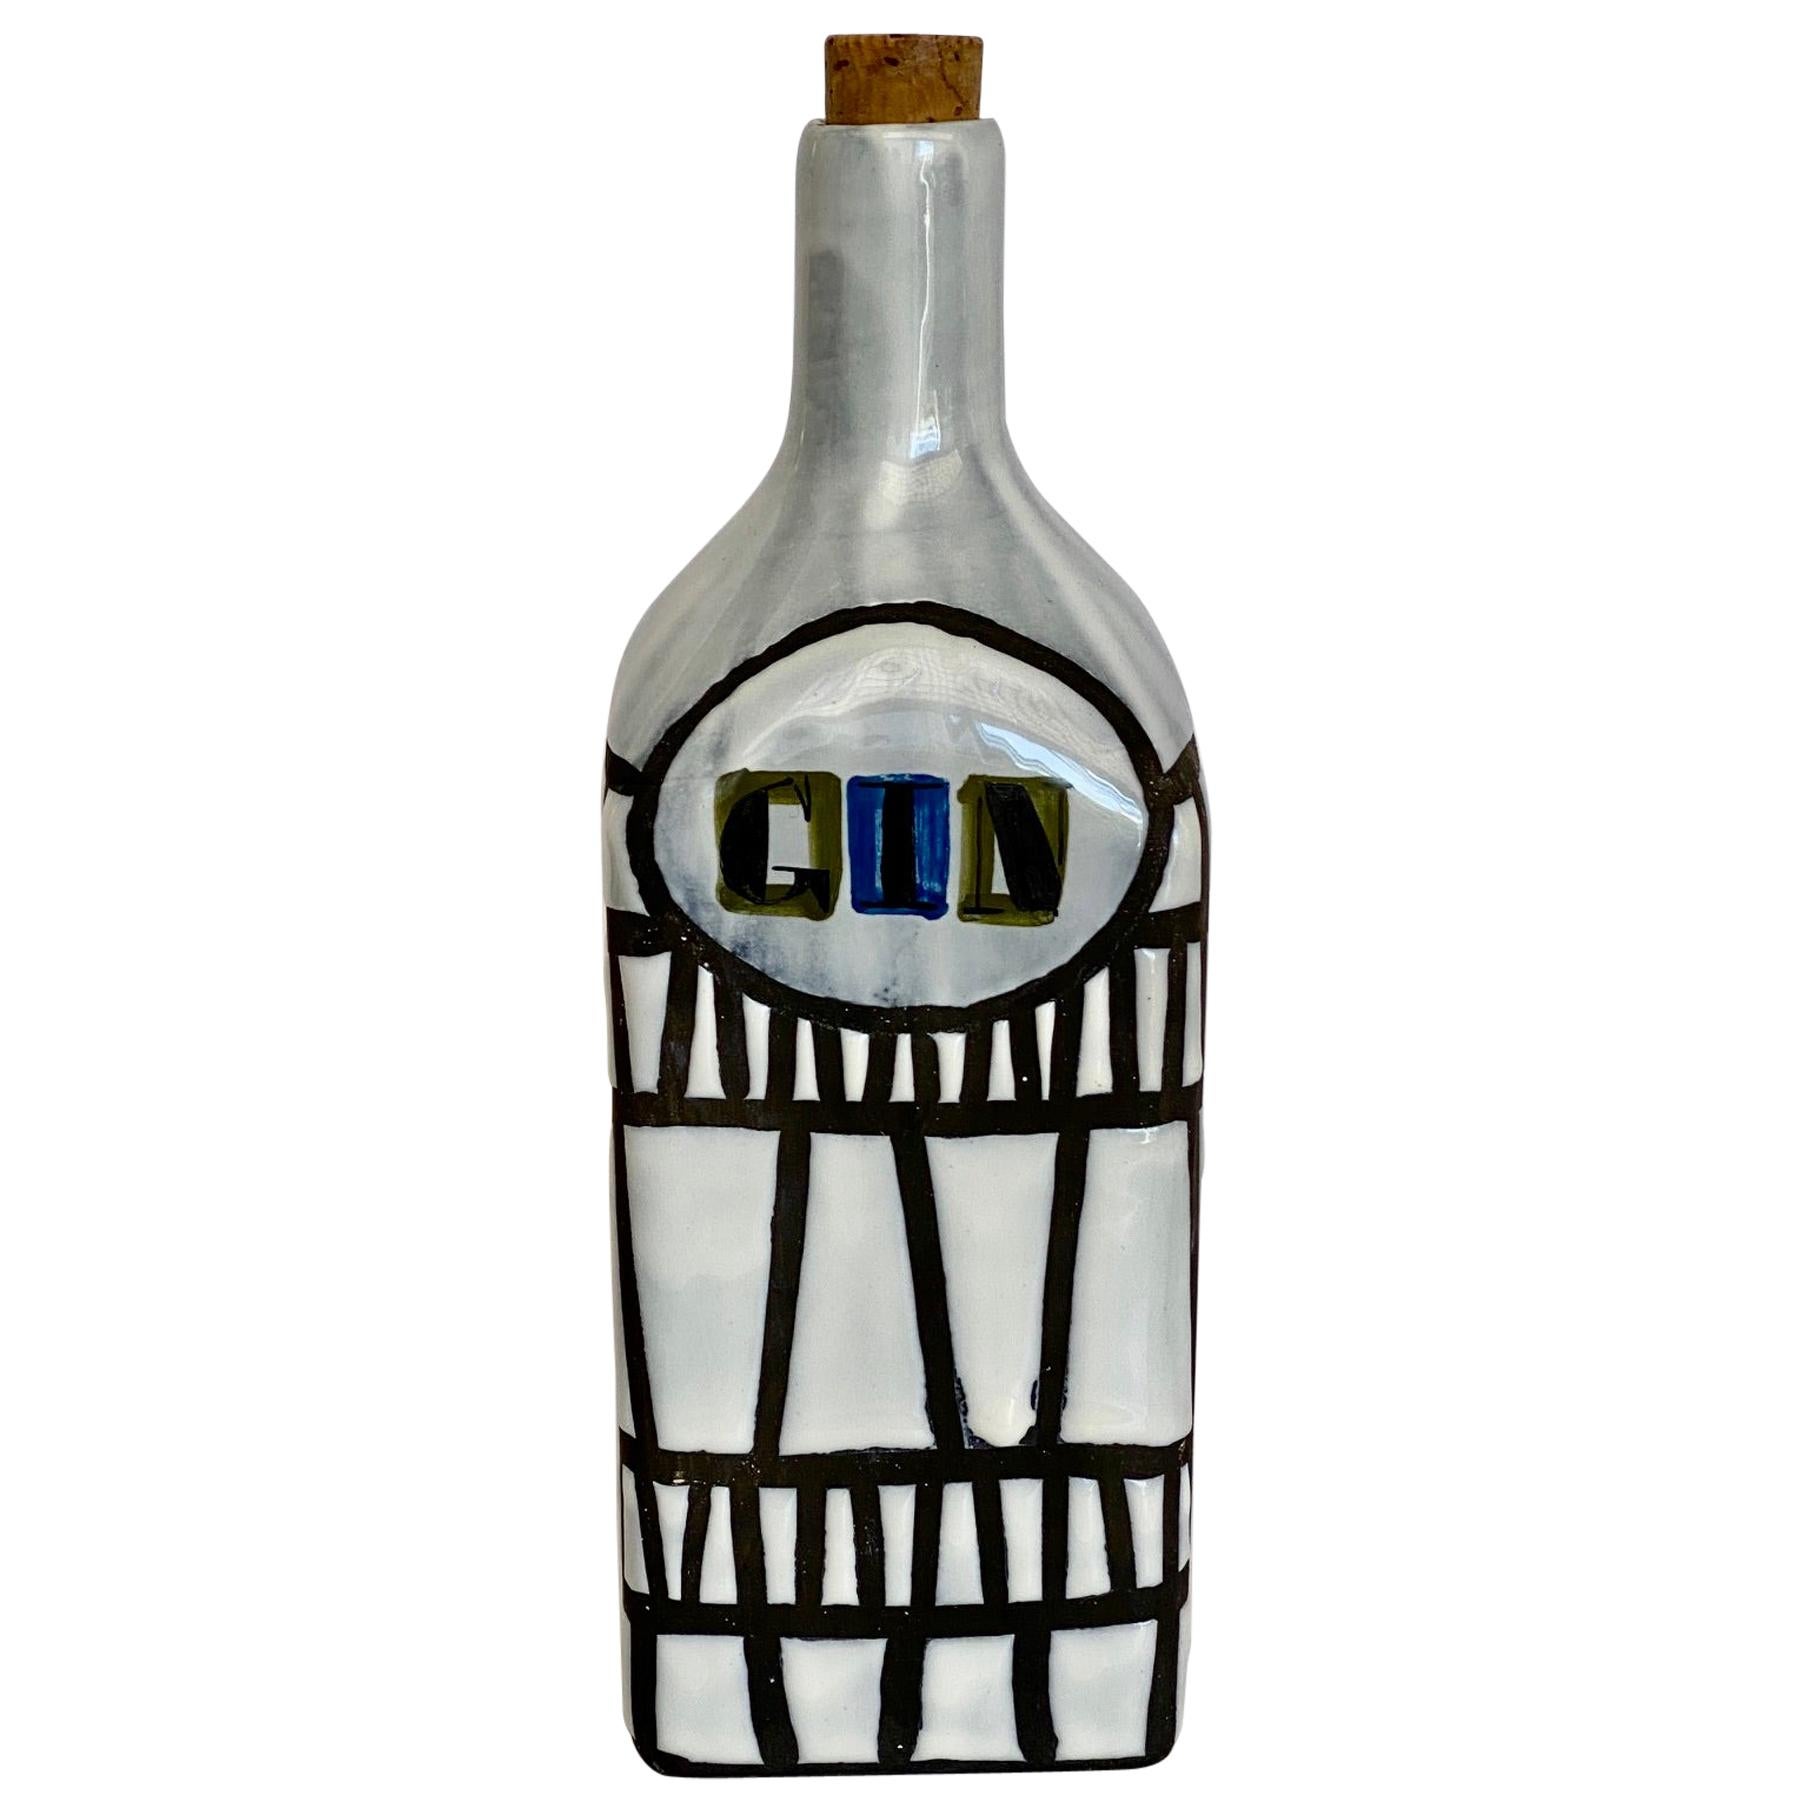 Bouteille « Gin » en céramique de Roger Capron de Vallauris, années 1950